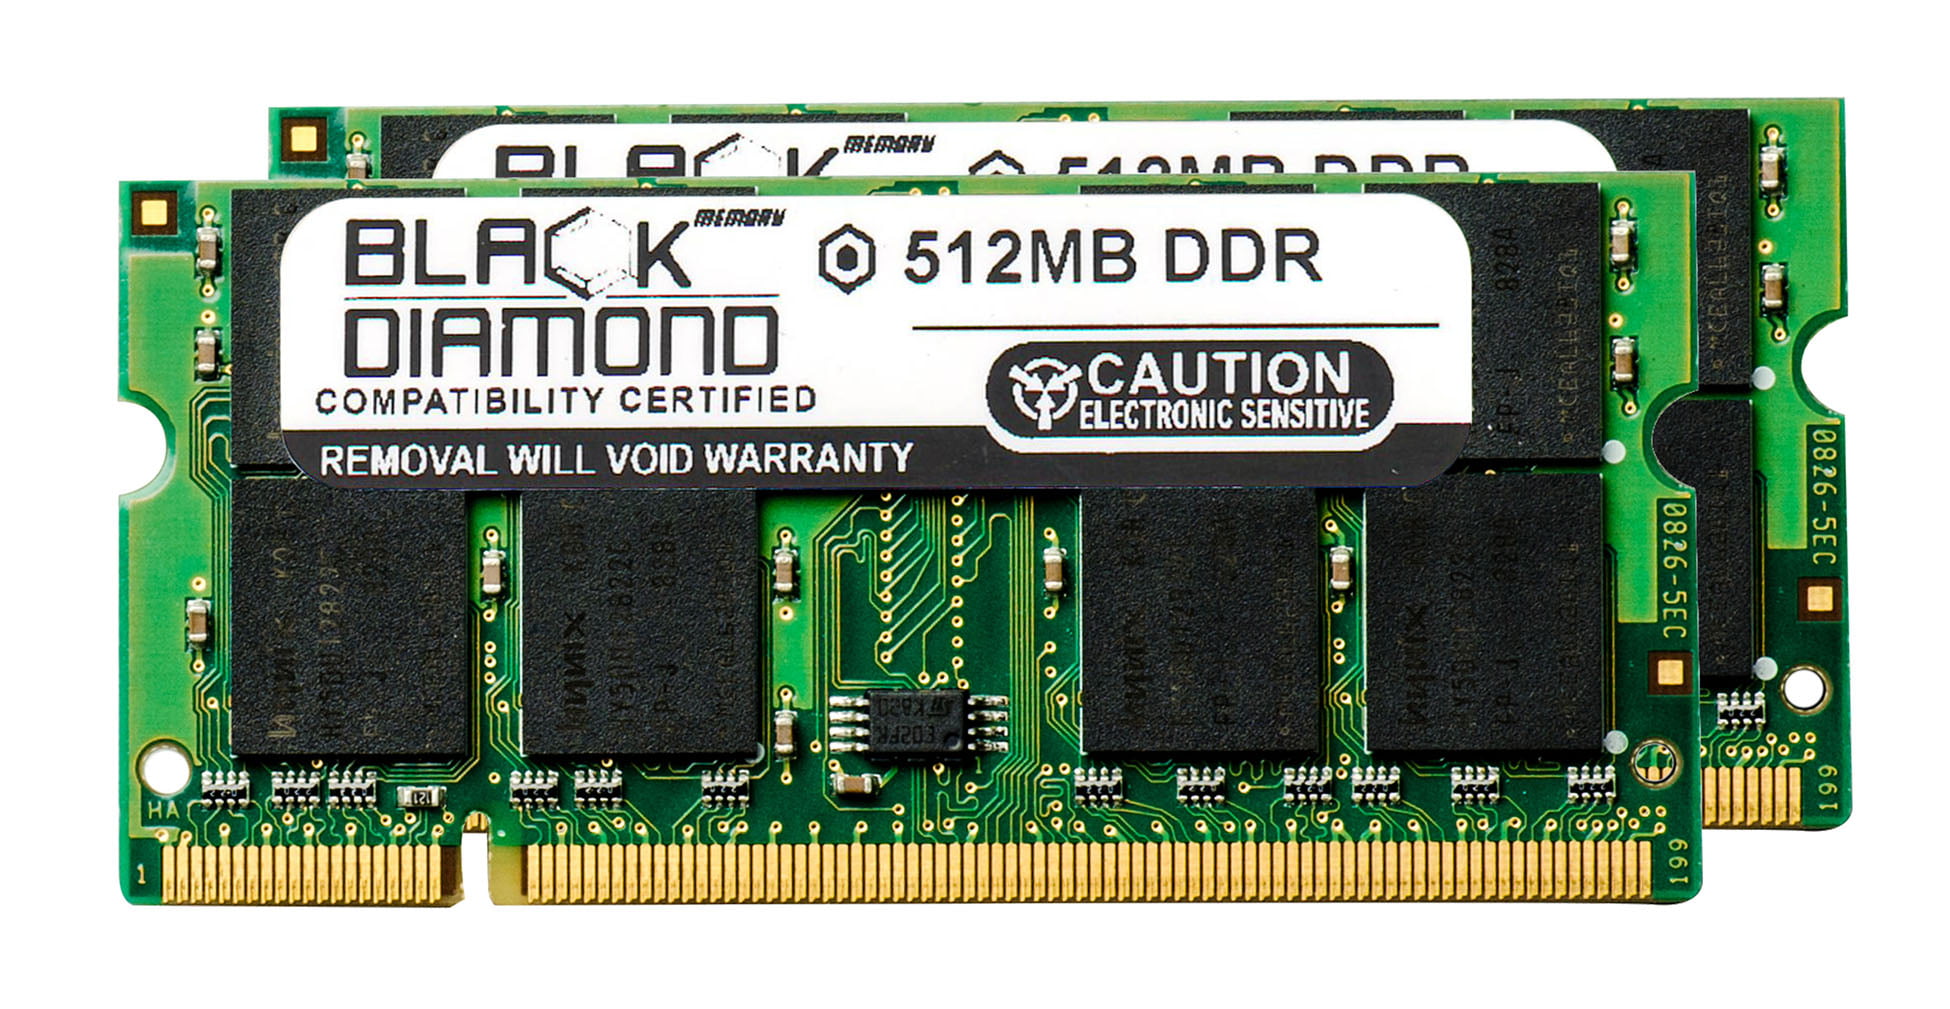 Sodimm ddr2 2gb. Apacer pc2700 DDR SDRAM 333 МГЦ MICRODIMM. DDR DIMM, 200-333 МГЦ. DDR Ram PC 2700.